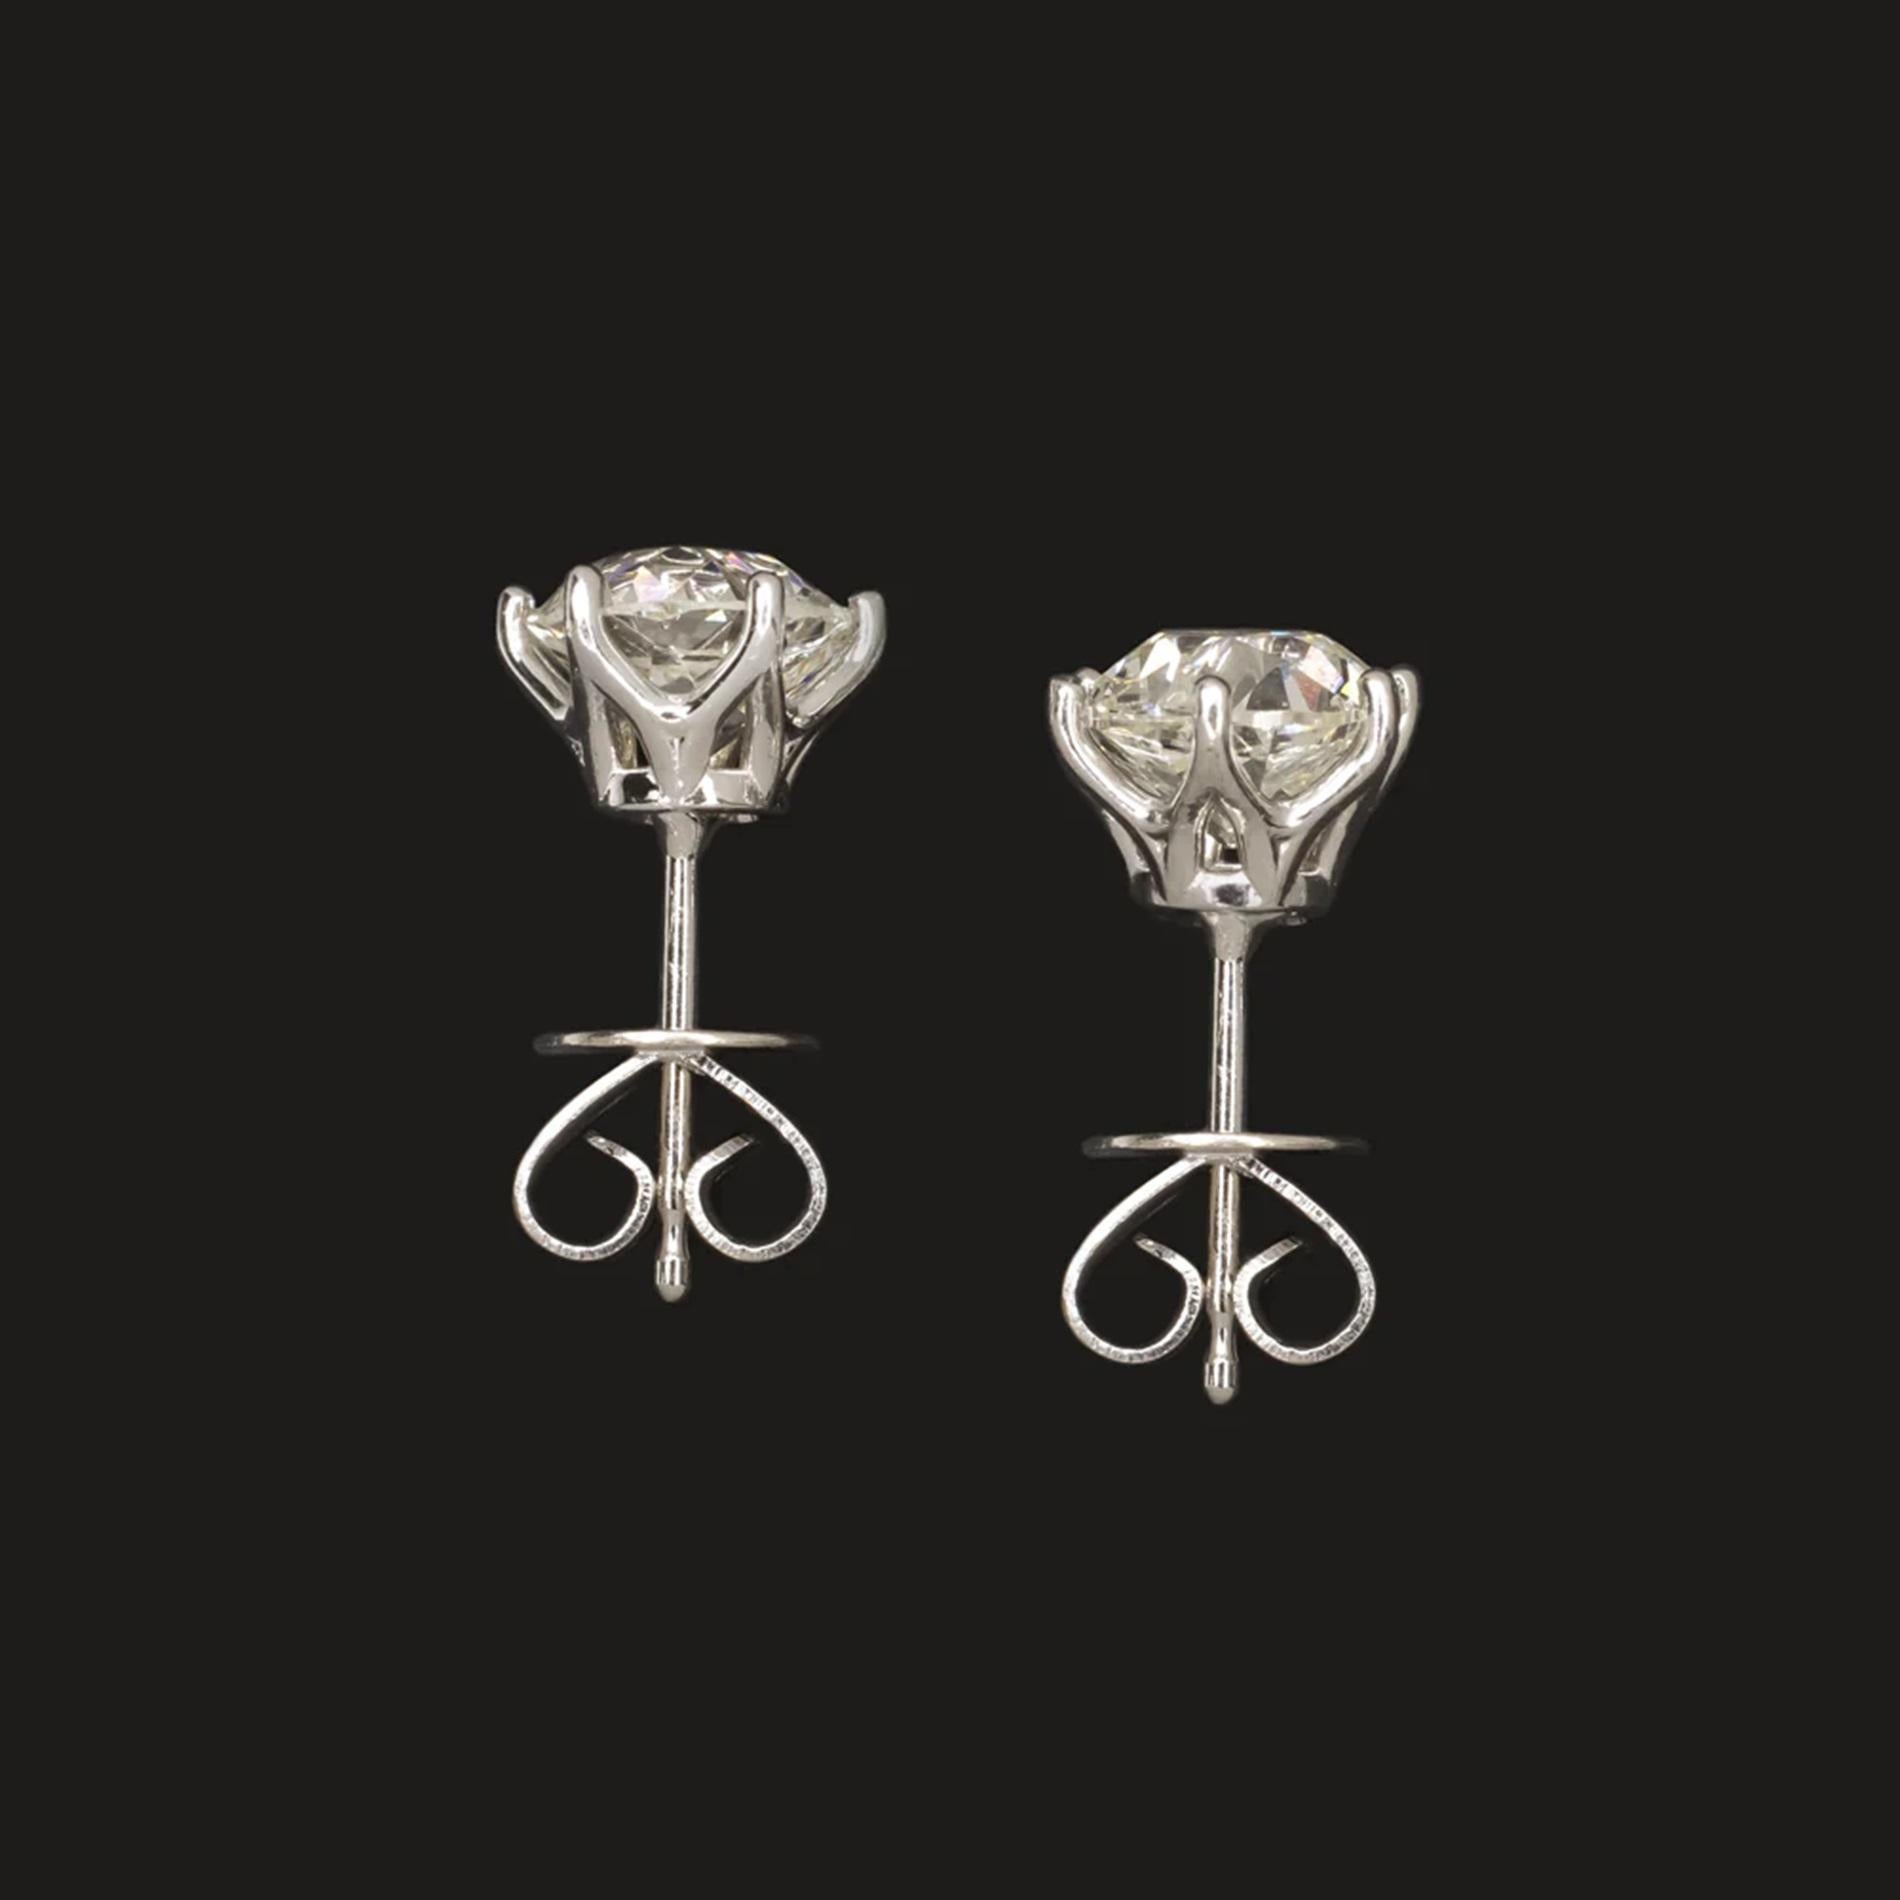 Diese  Ein unglaubliches Paar runder Diamanten im Brillantschliff sind alte Diamantohrstecker im europäischen Schliff, die für immer klassisch aussehen. Mit 2,27 ct haben sie ein beachtliches Aussehen!

Höhepunkte:

- Beachtliches Paar von 2,27